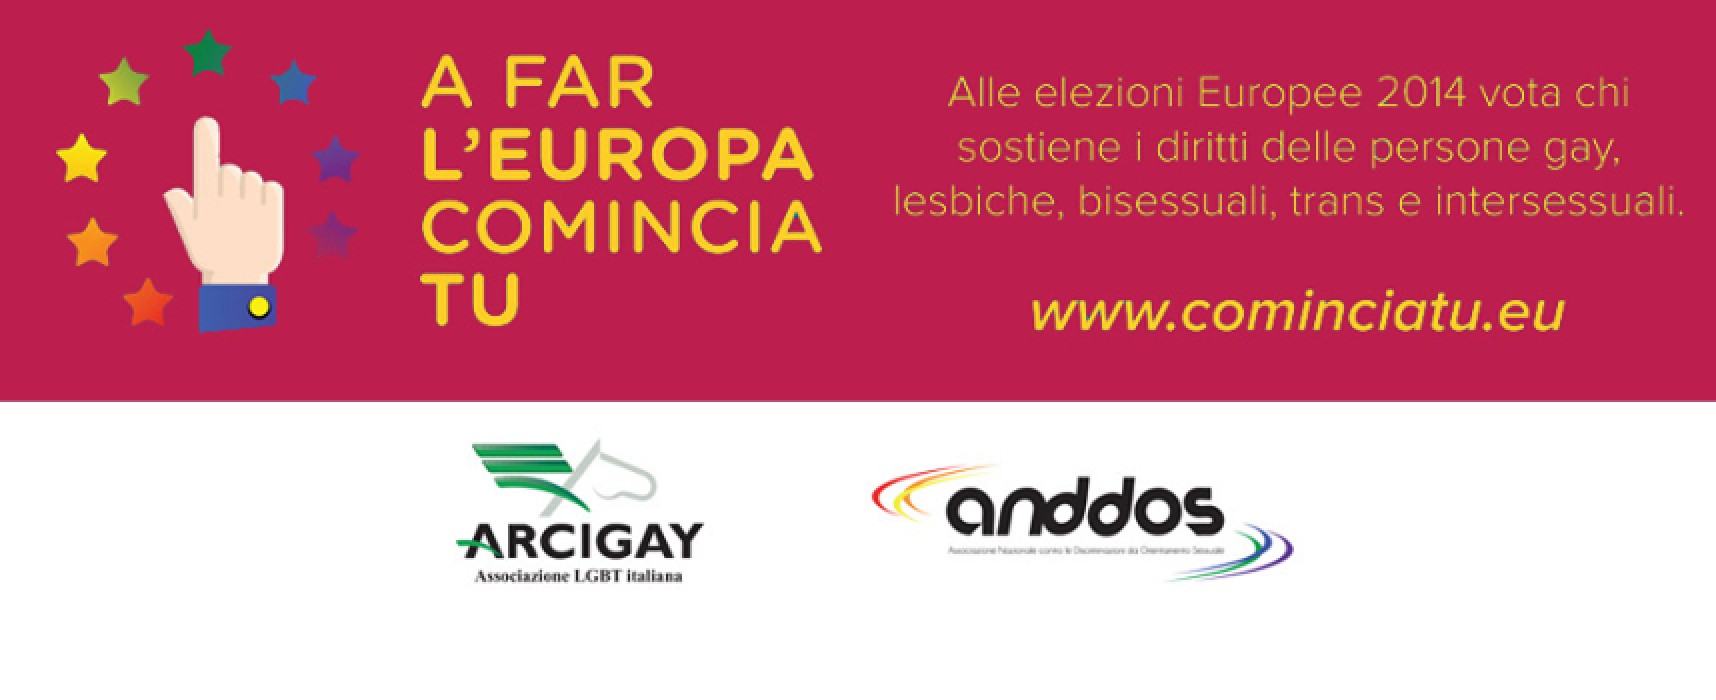 “A far l’Europa comincia tu”, campagna promossa da Arcigay